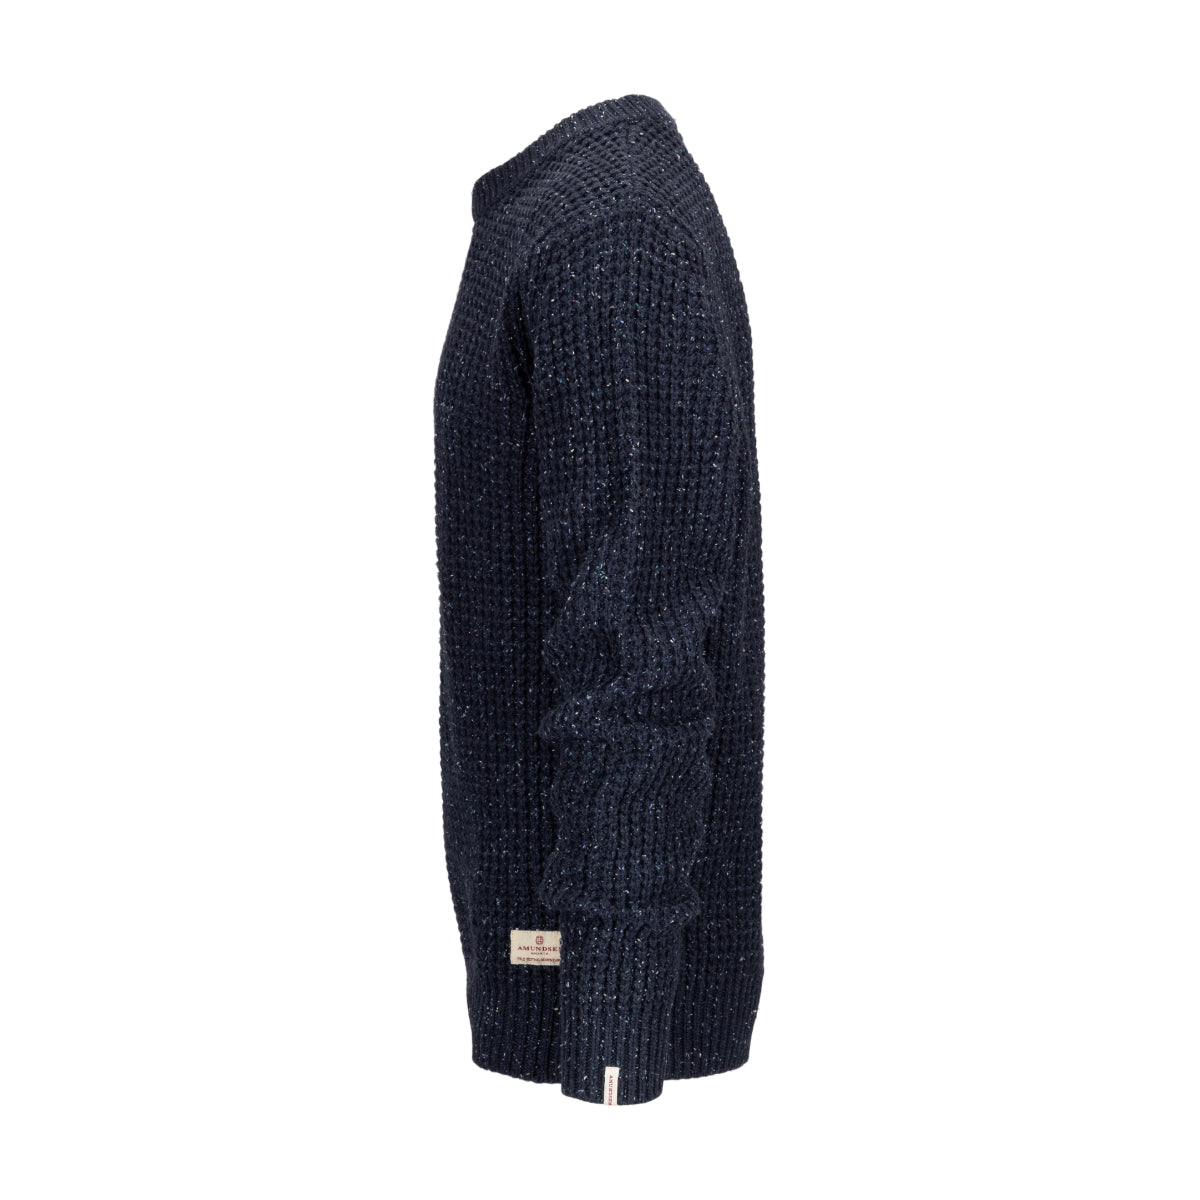 Amundsen Sports - Men's Field Sweater - Faded Navy